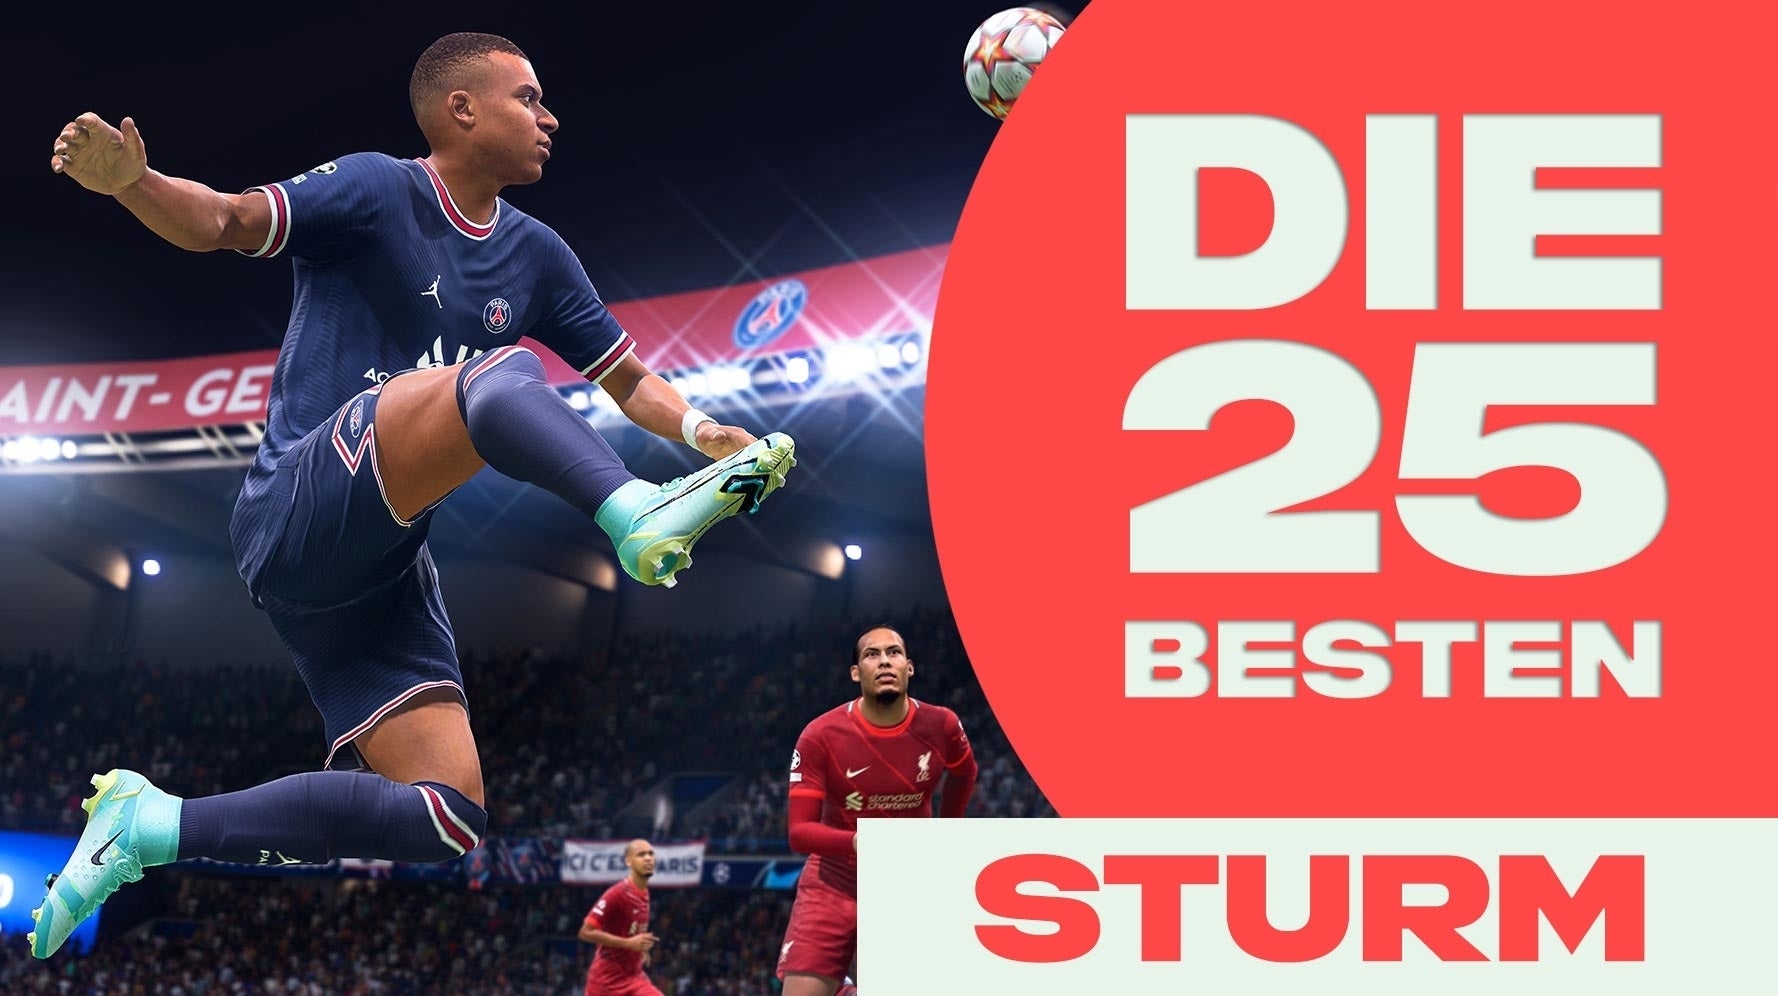 Bilder zu FIFA 22: Die besten Spieler - 25 Stürmer und Offensivspieler für ST, LF, RF